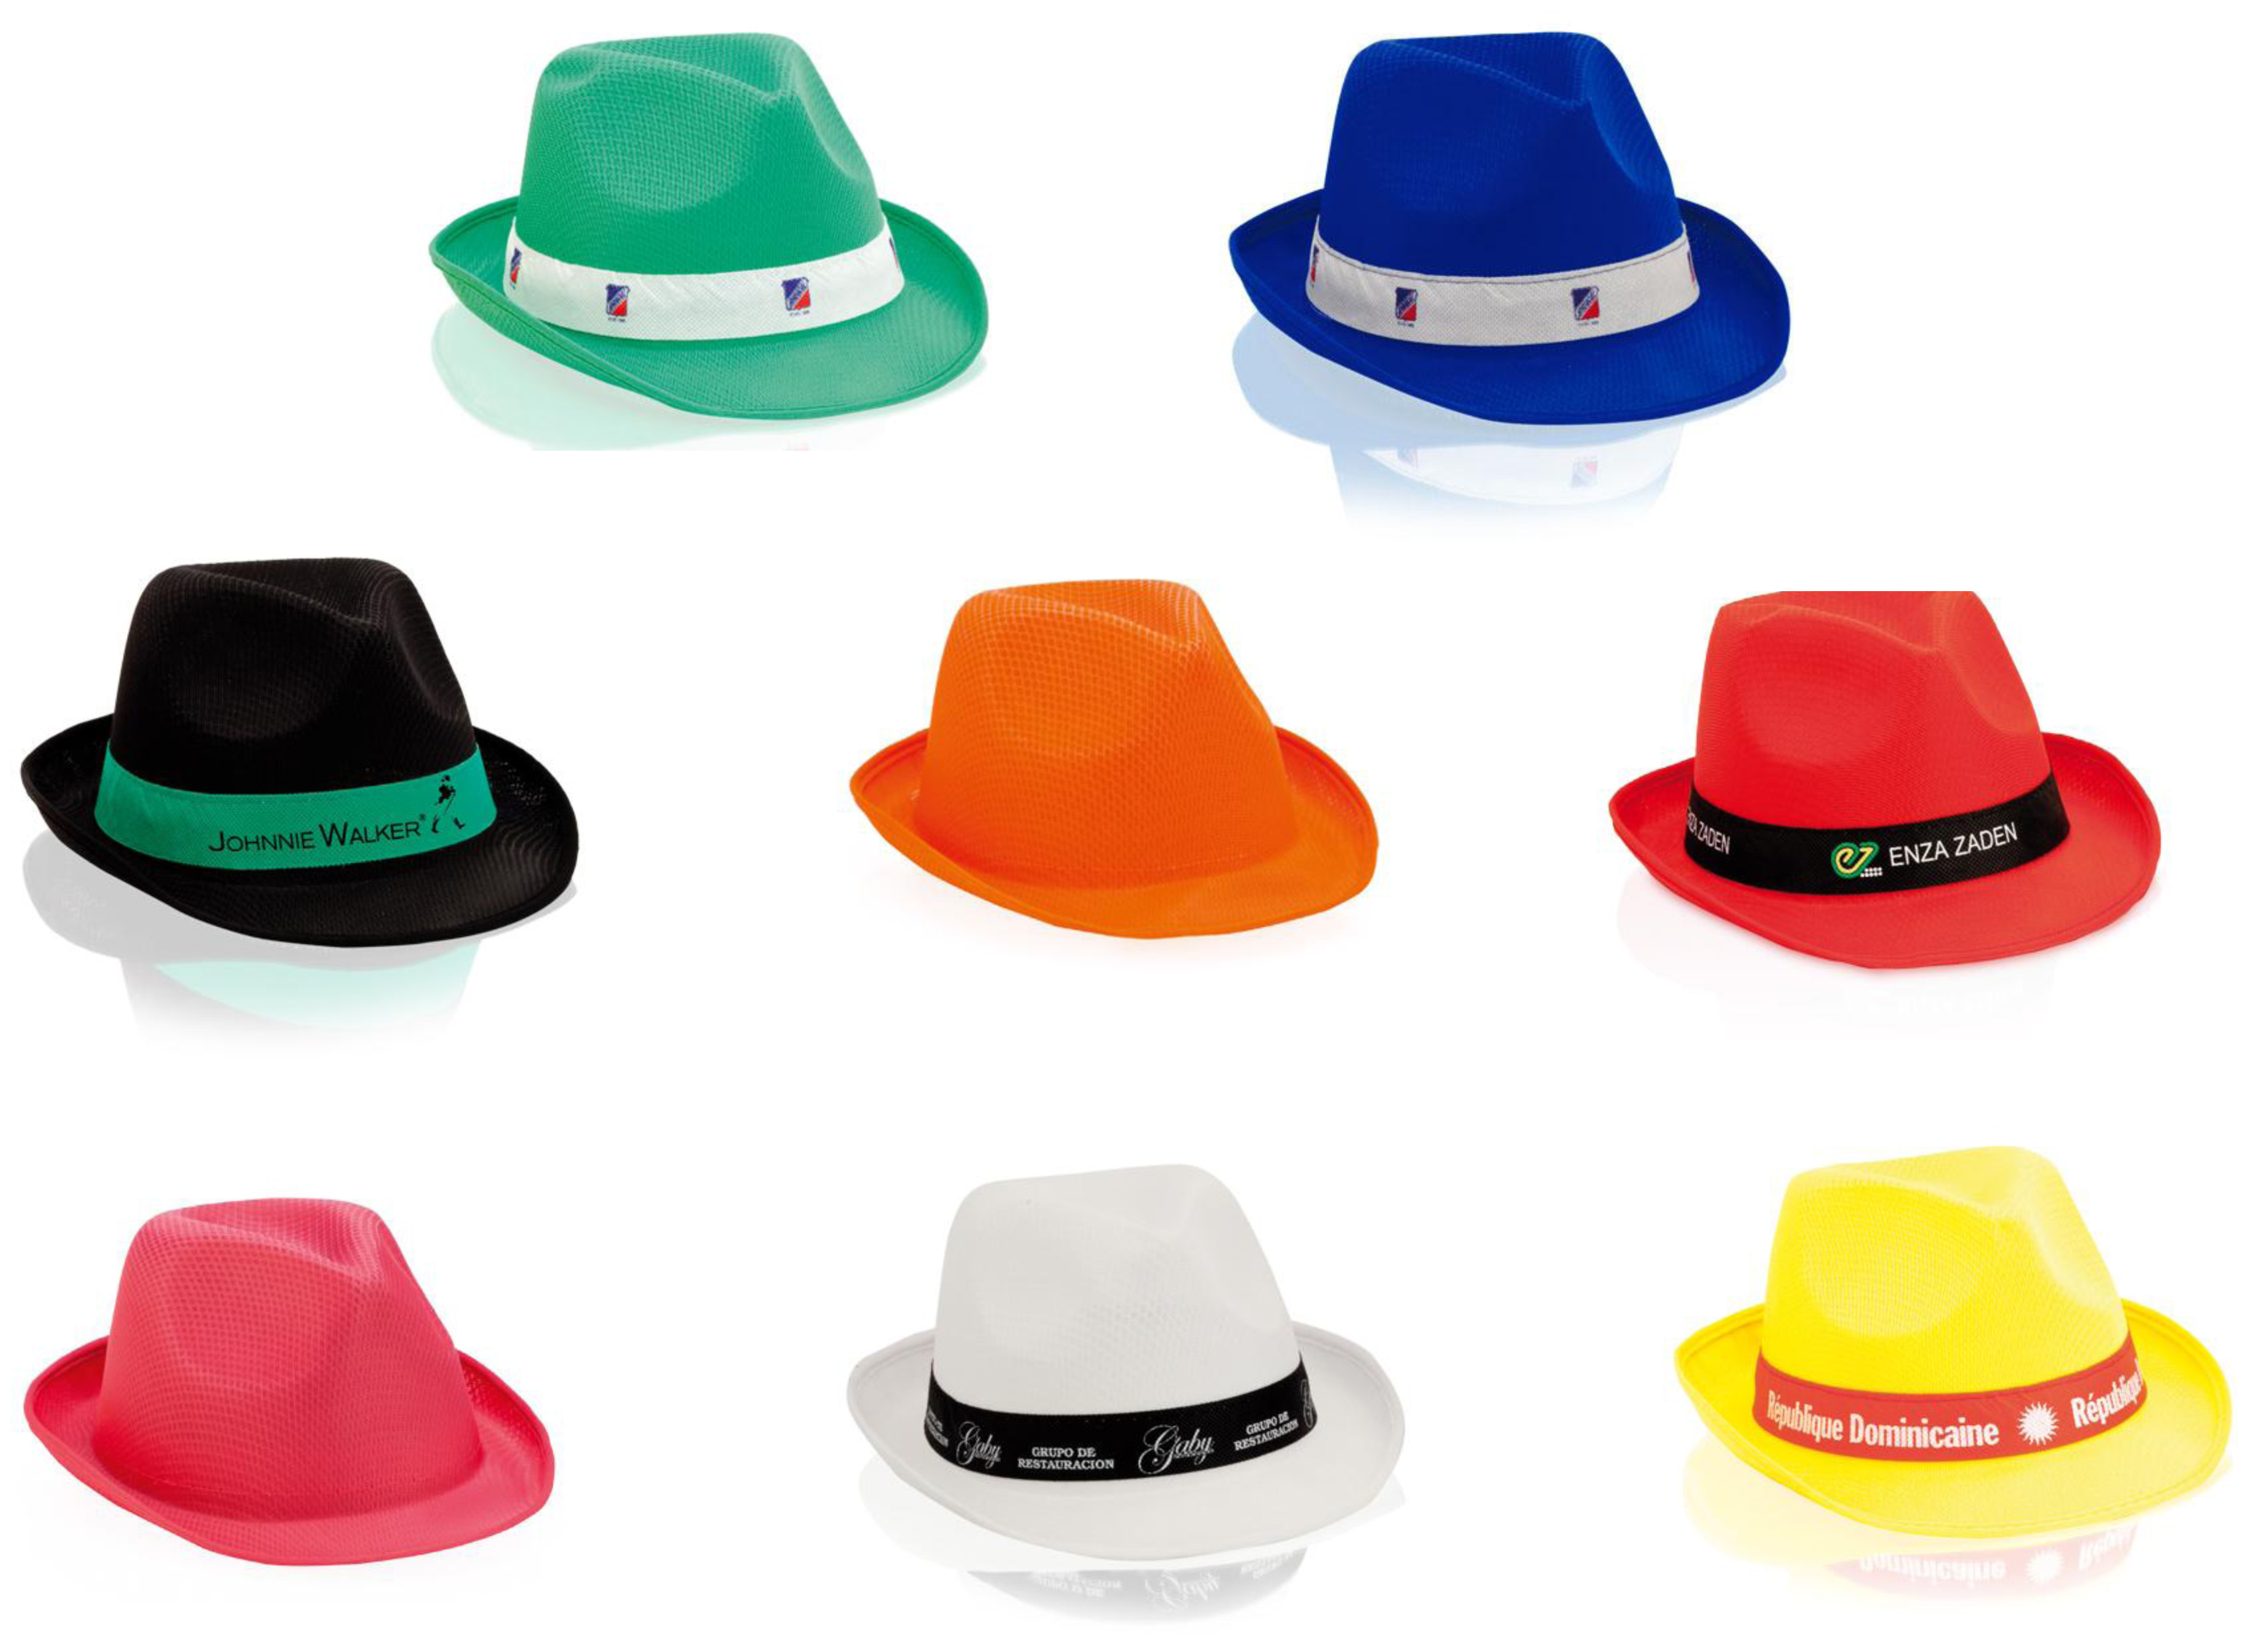 Personnaliser les chapeaux avec votre propre logo